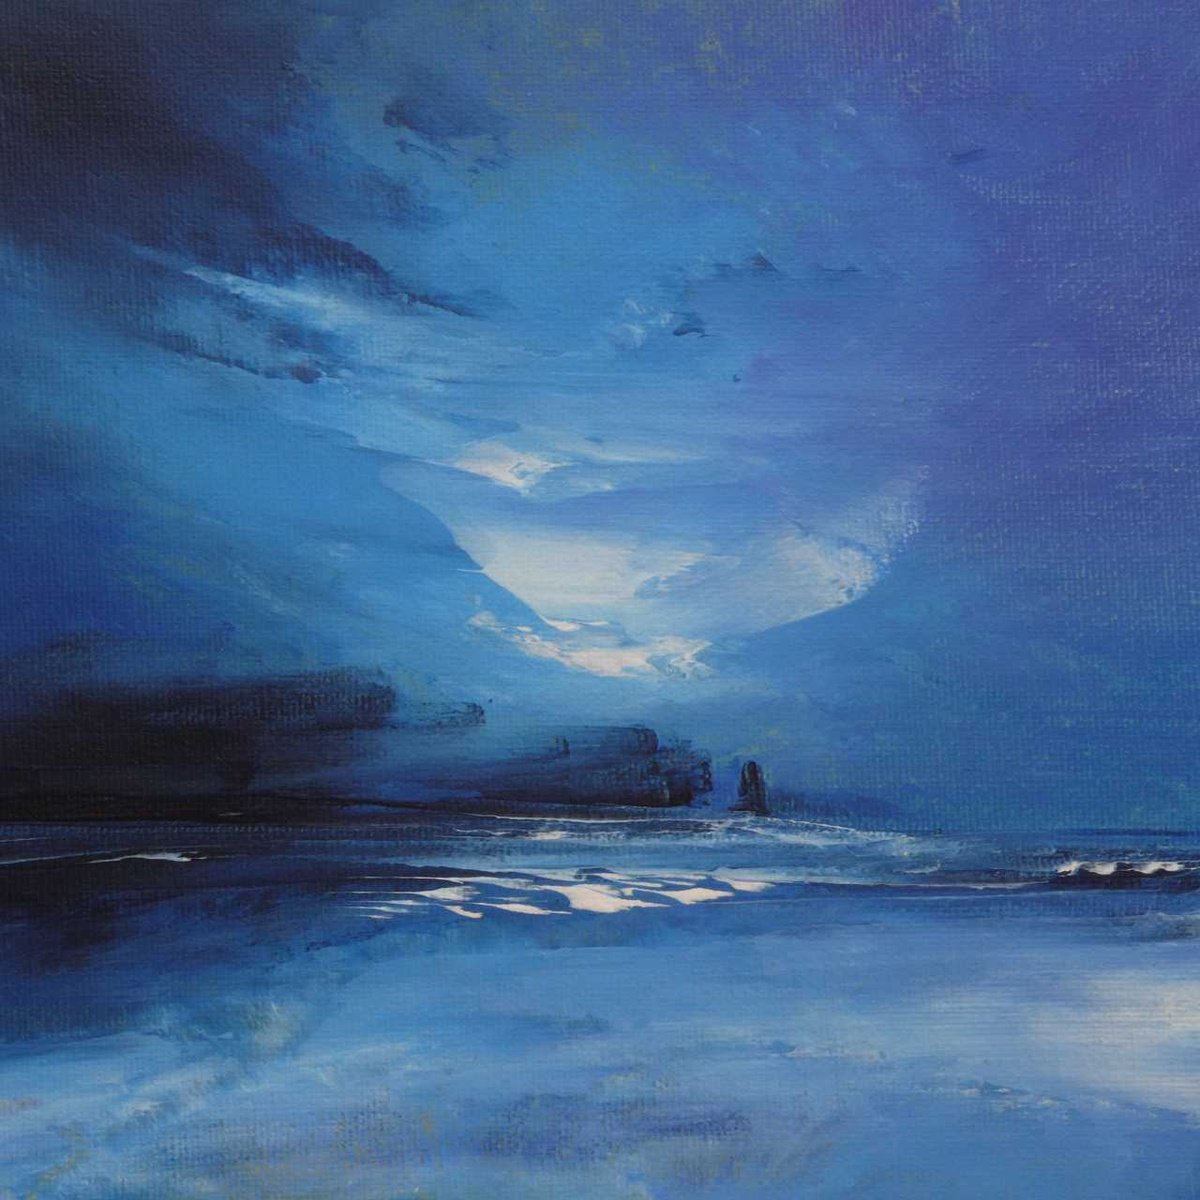 Sandwood Bay Moonlight by oconnart